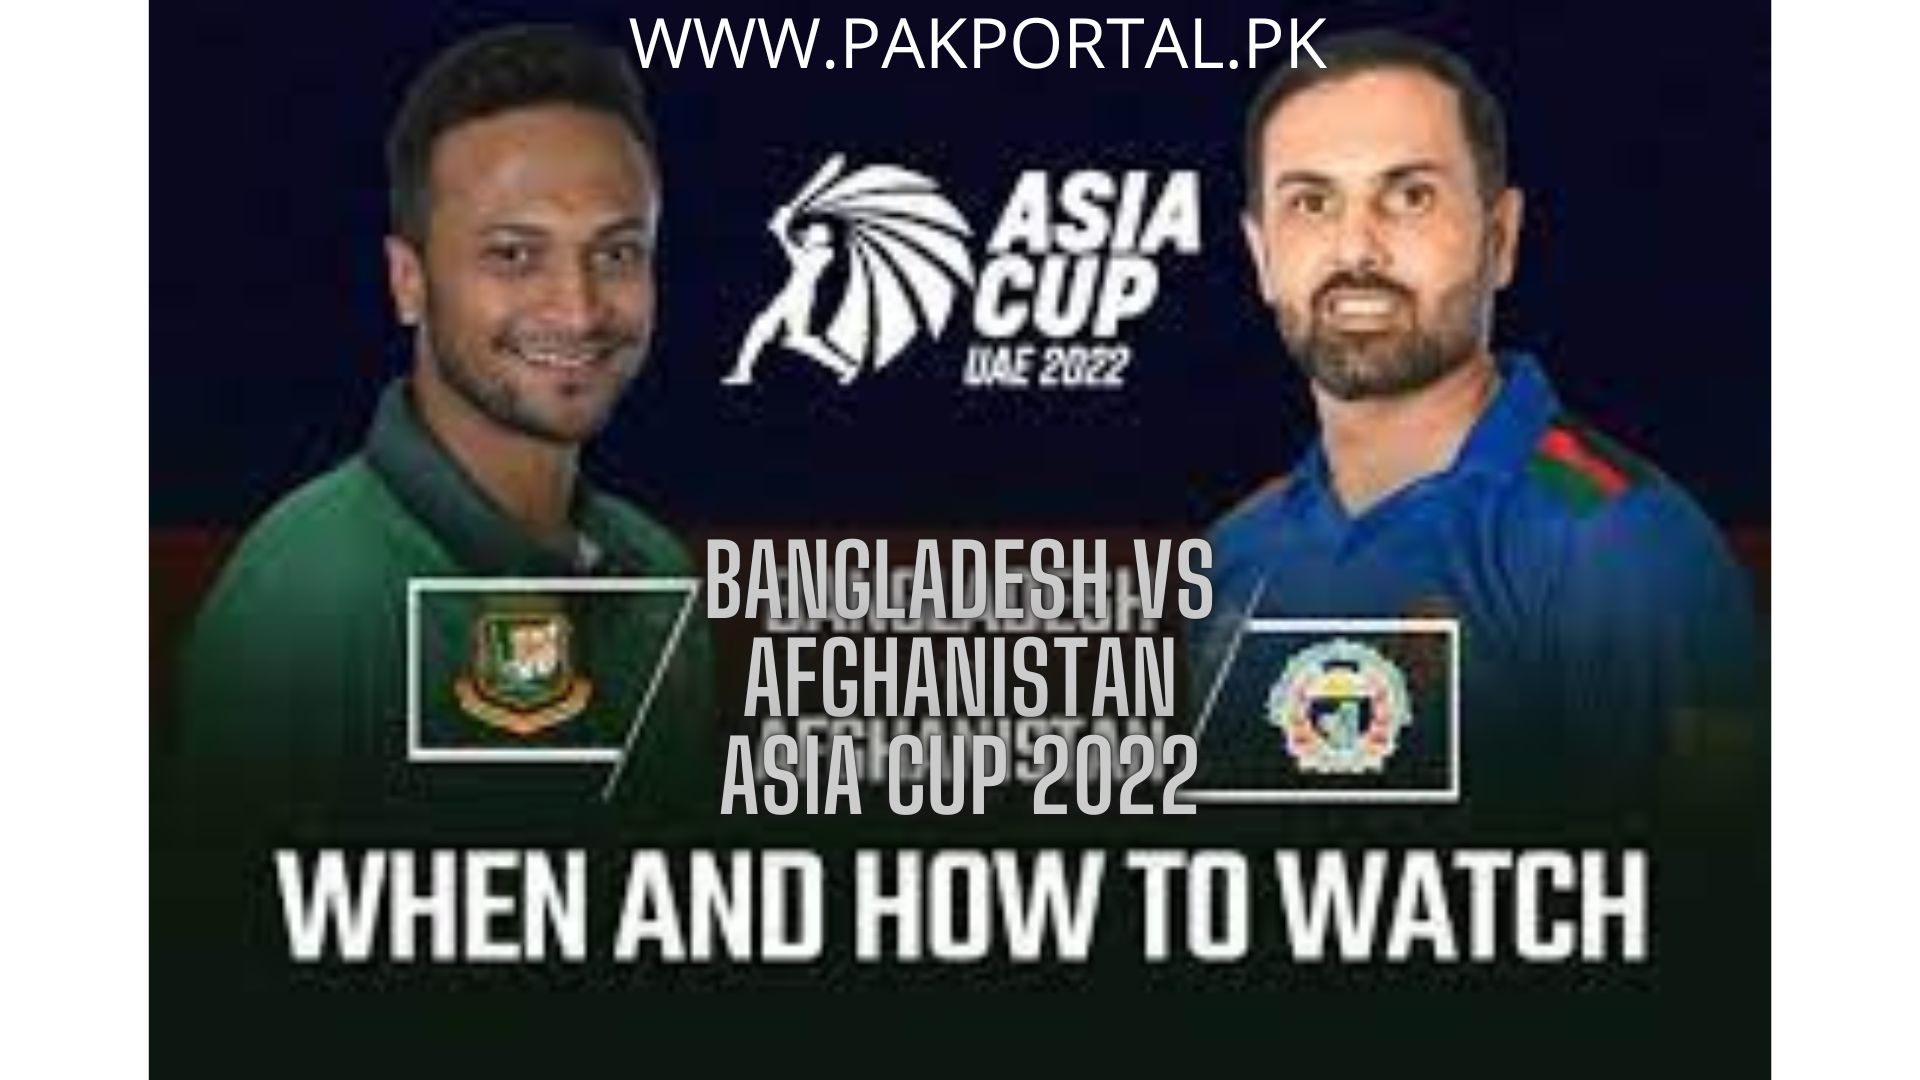 Bangladesh vs Afghanistan Asia Cup 2022